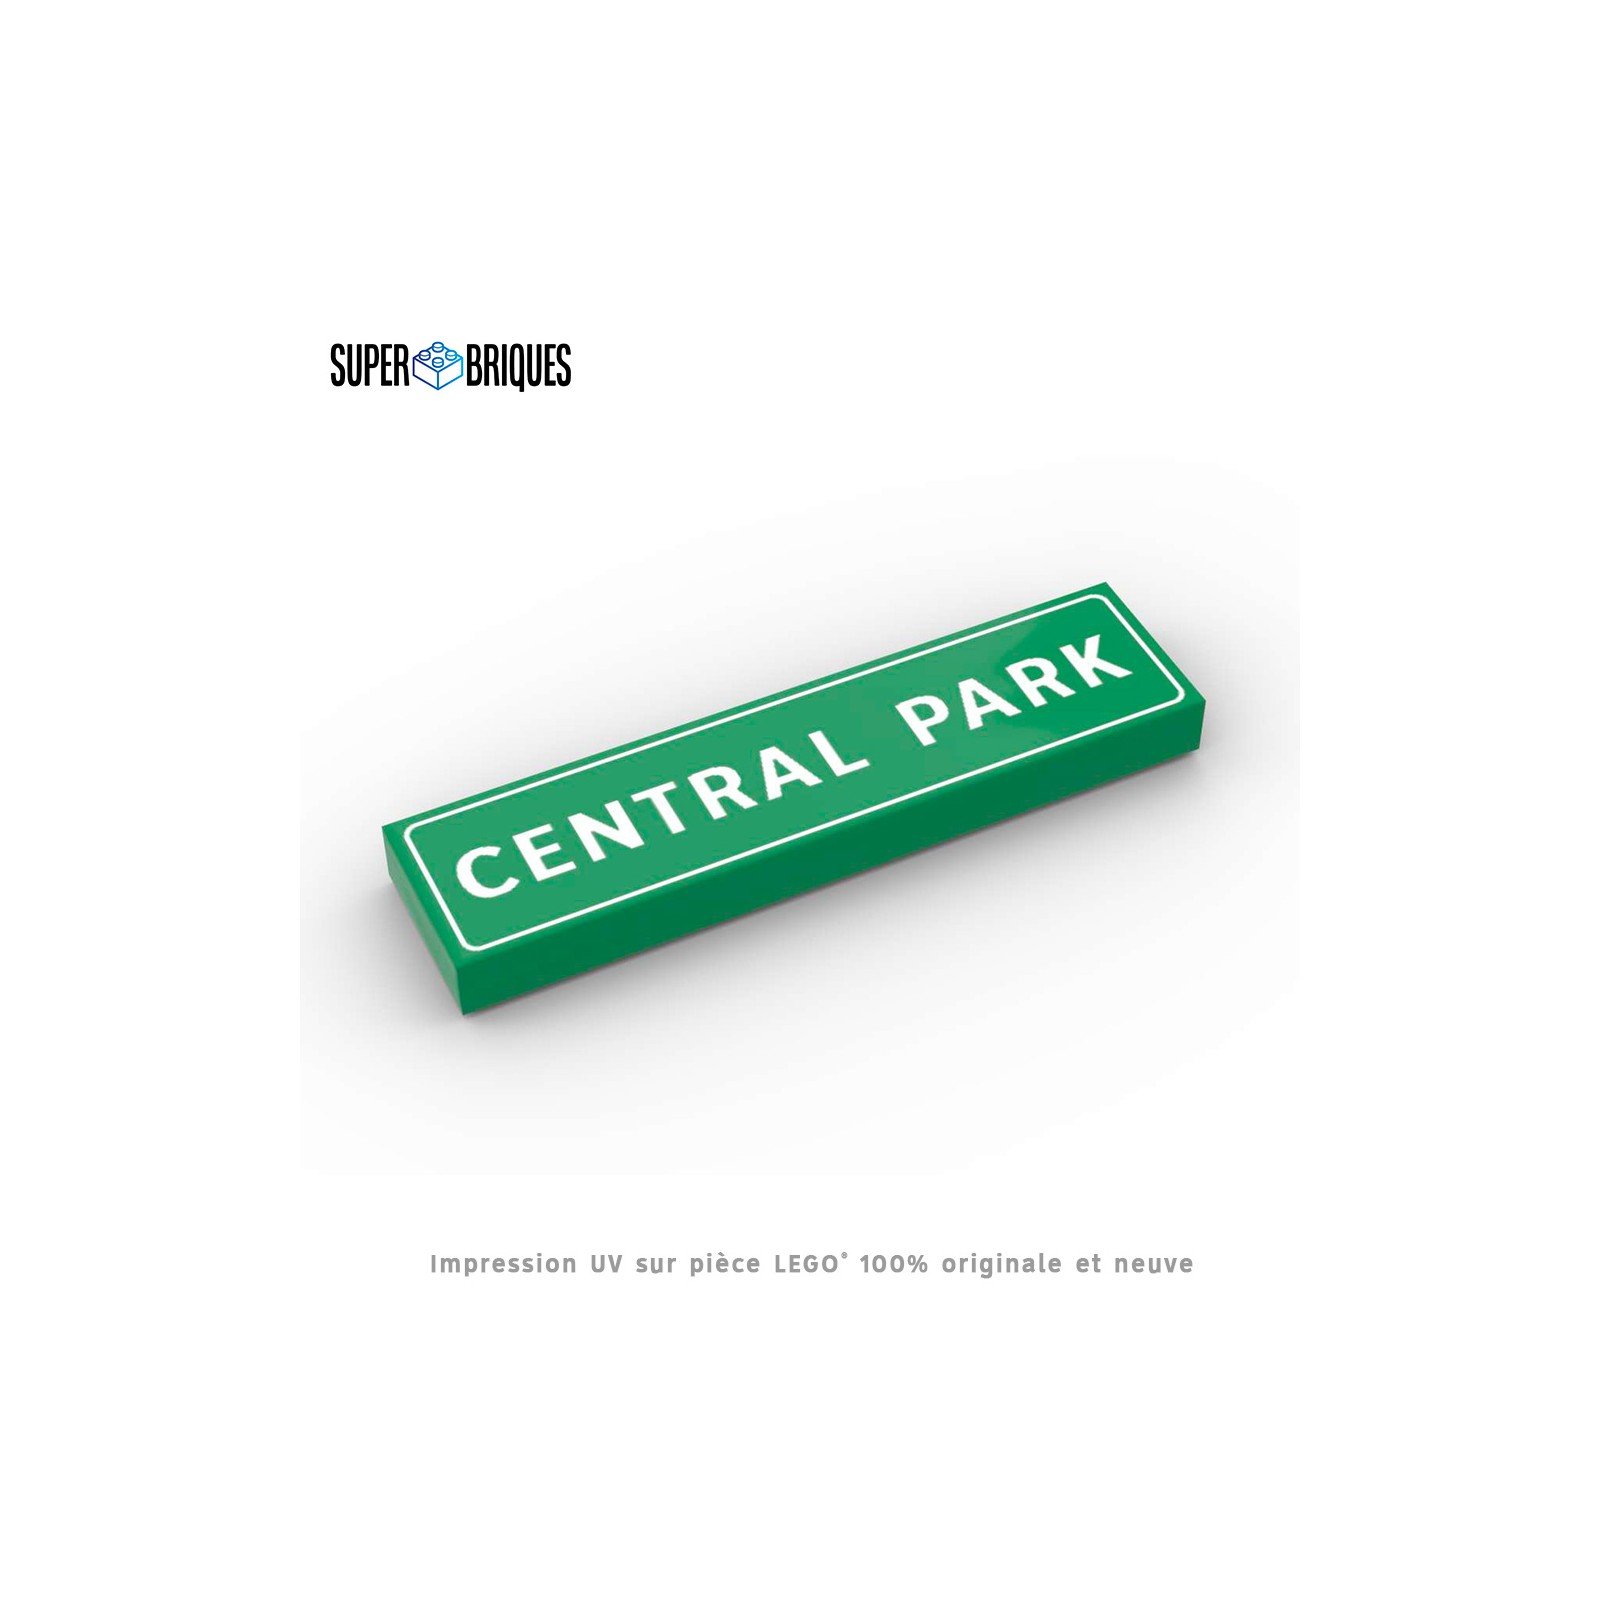 Panneau de rue New York "Central Park" - Pièce LEGO® customisée